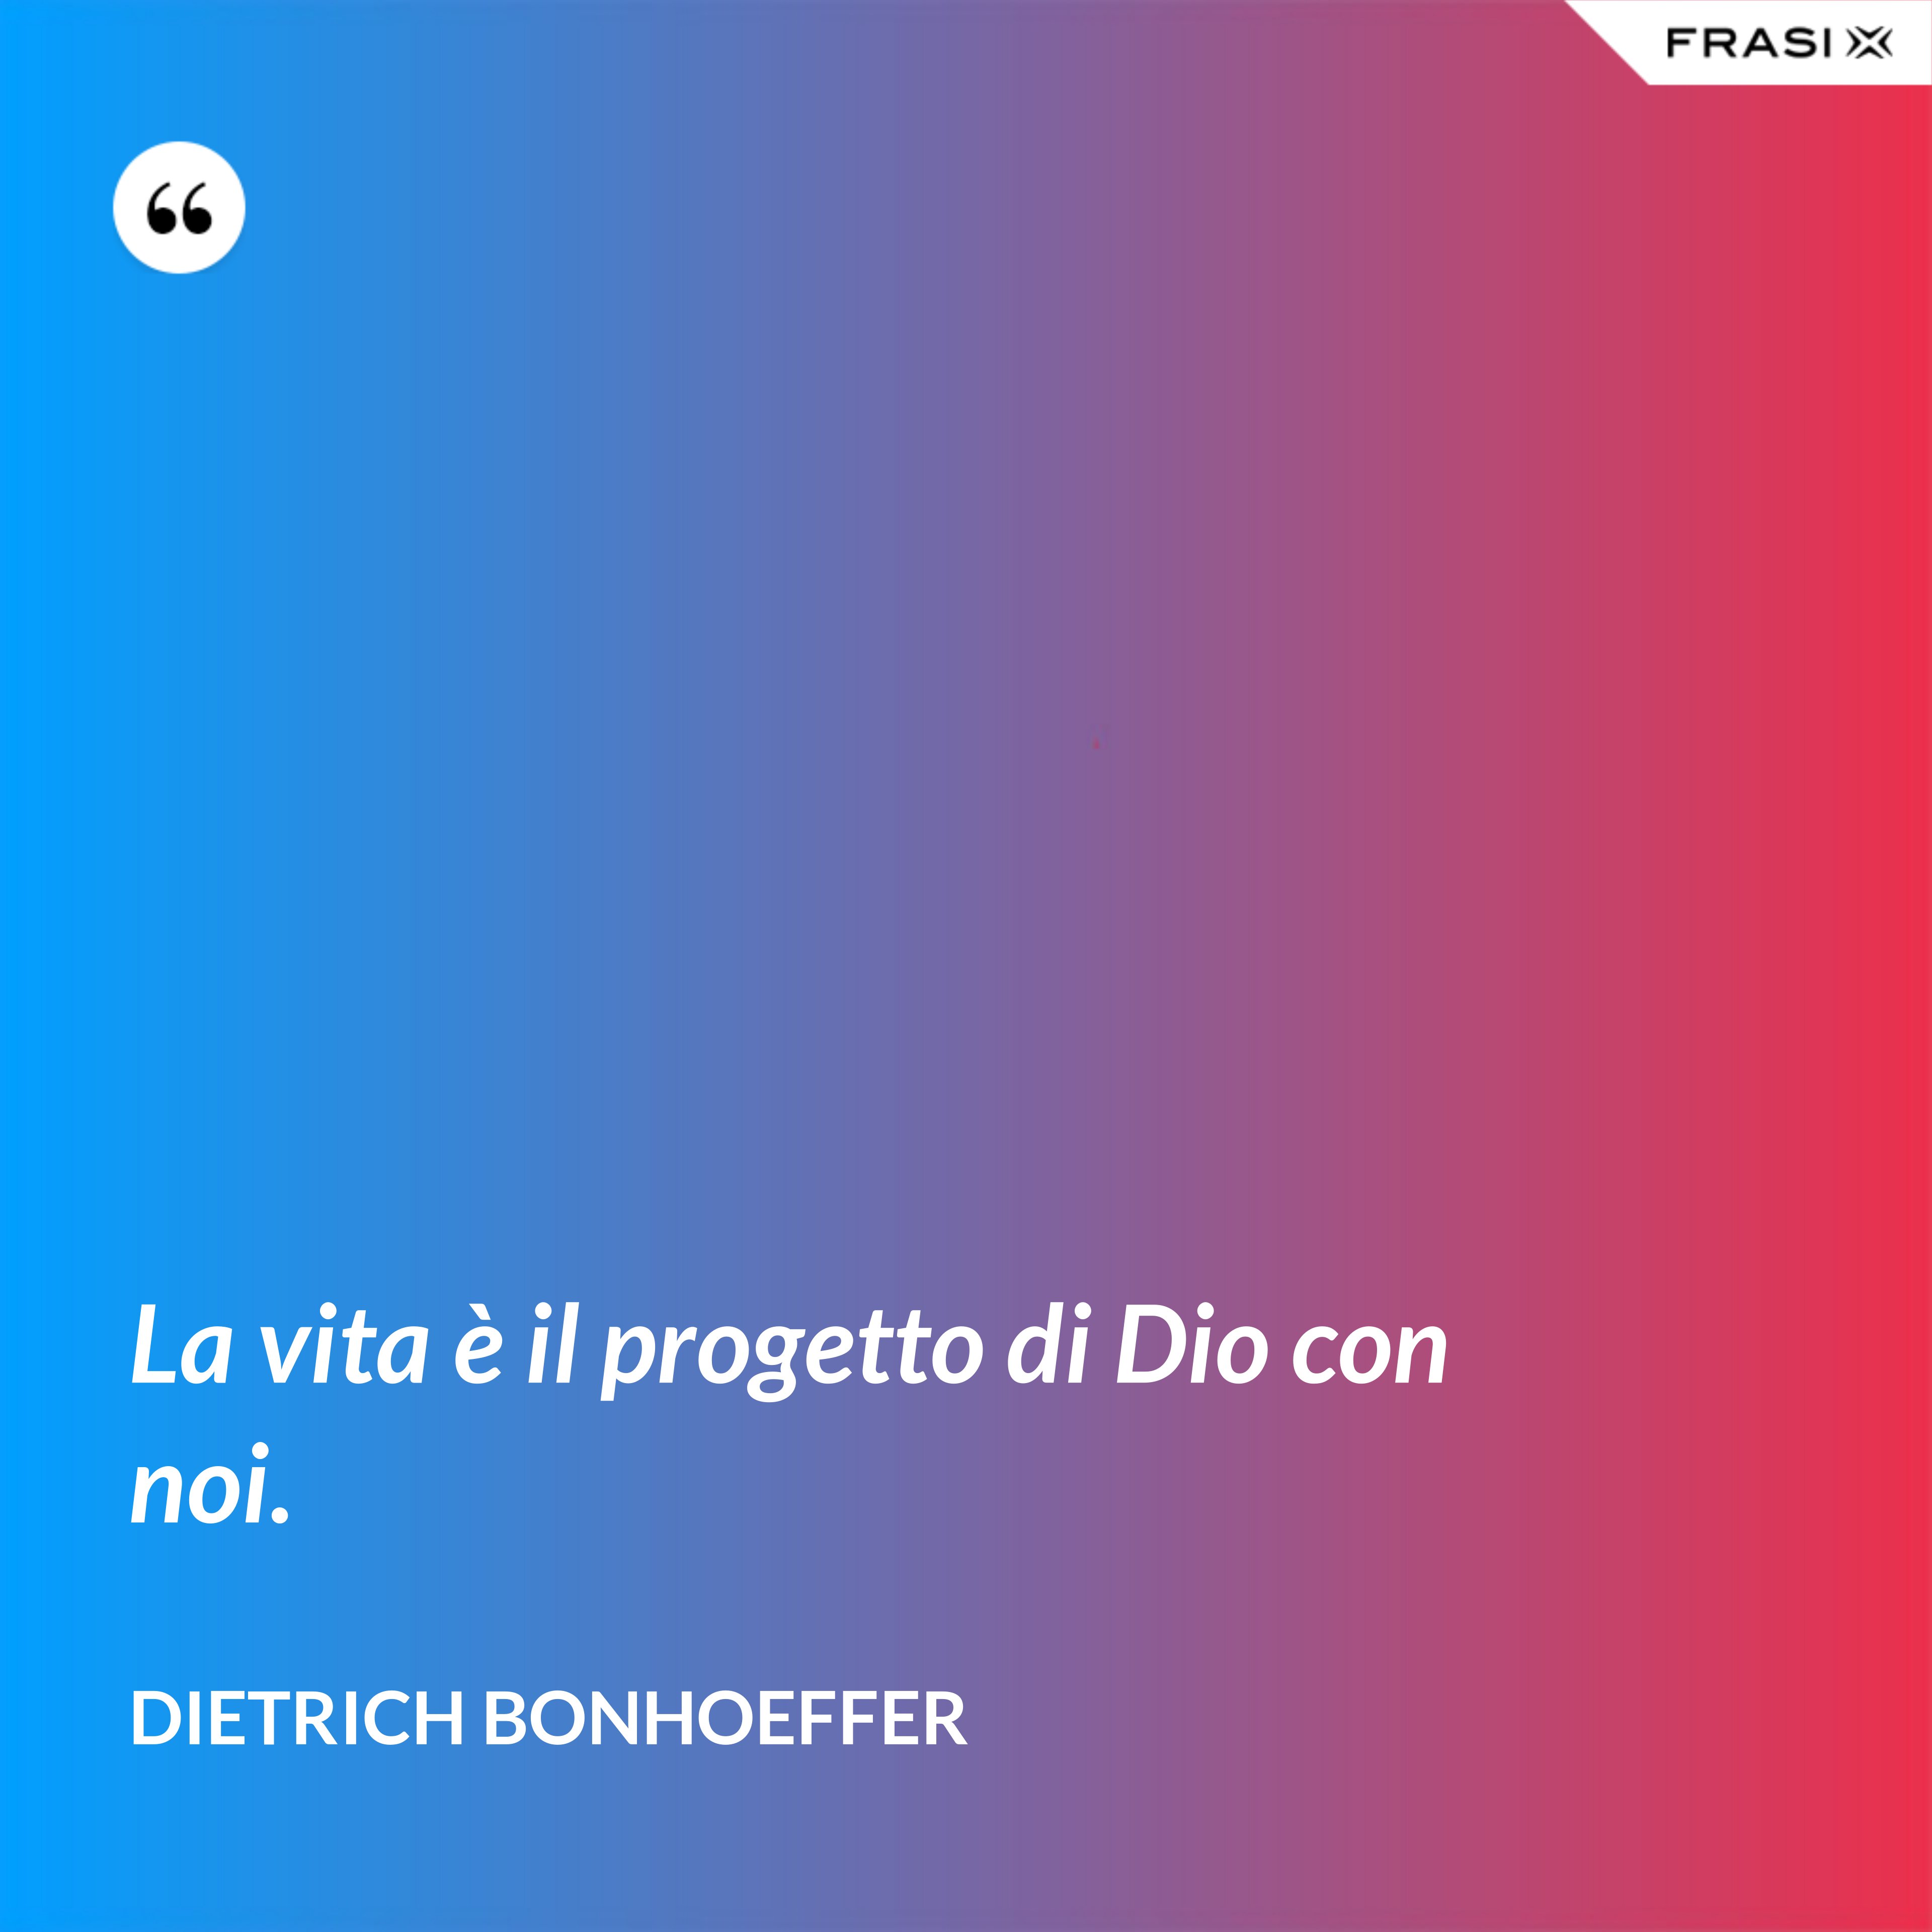 La vita è il progetto di Dio con noi. - Dietrich Bonhoeffer